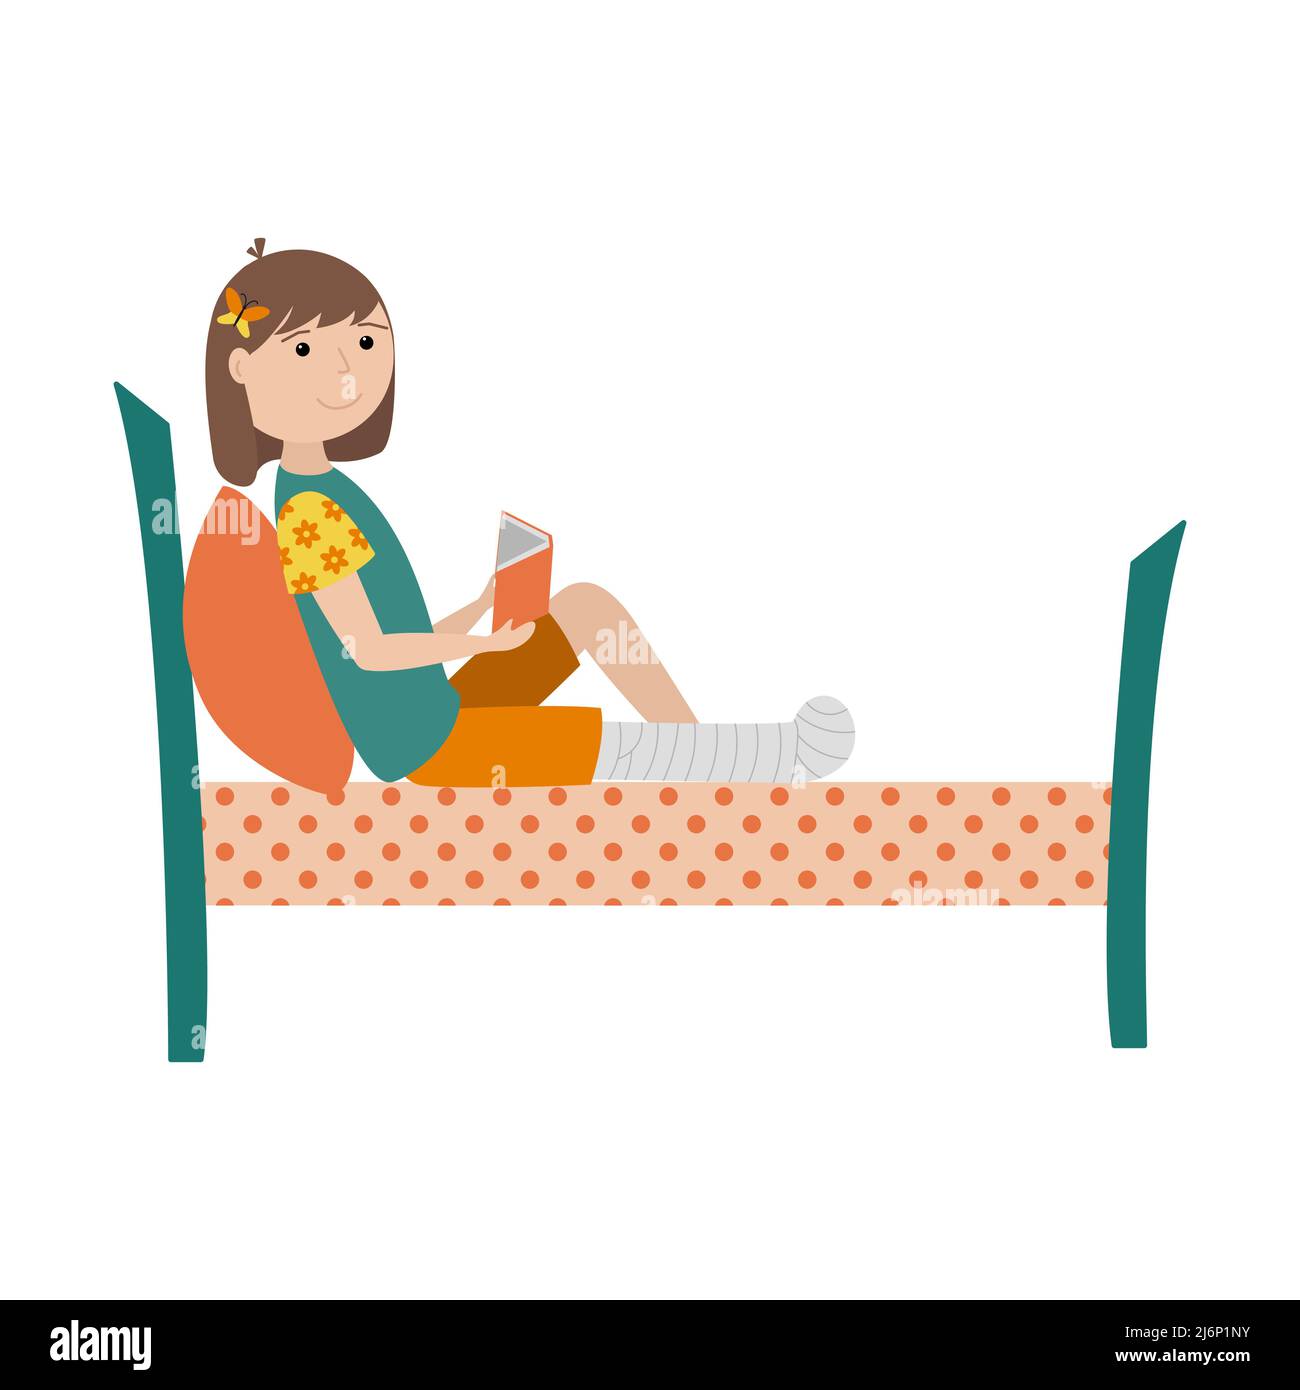 Une fille avec une jambe cassée est couché sur le lit avec un livre dans ses mains. La jambe est bandée et fixée avec une fonte. Illustration couleur avec enfants dans Illustration de Vecteur